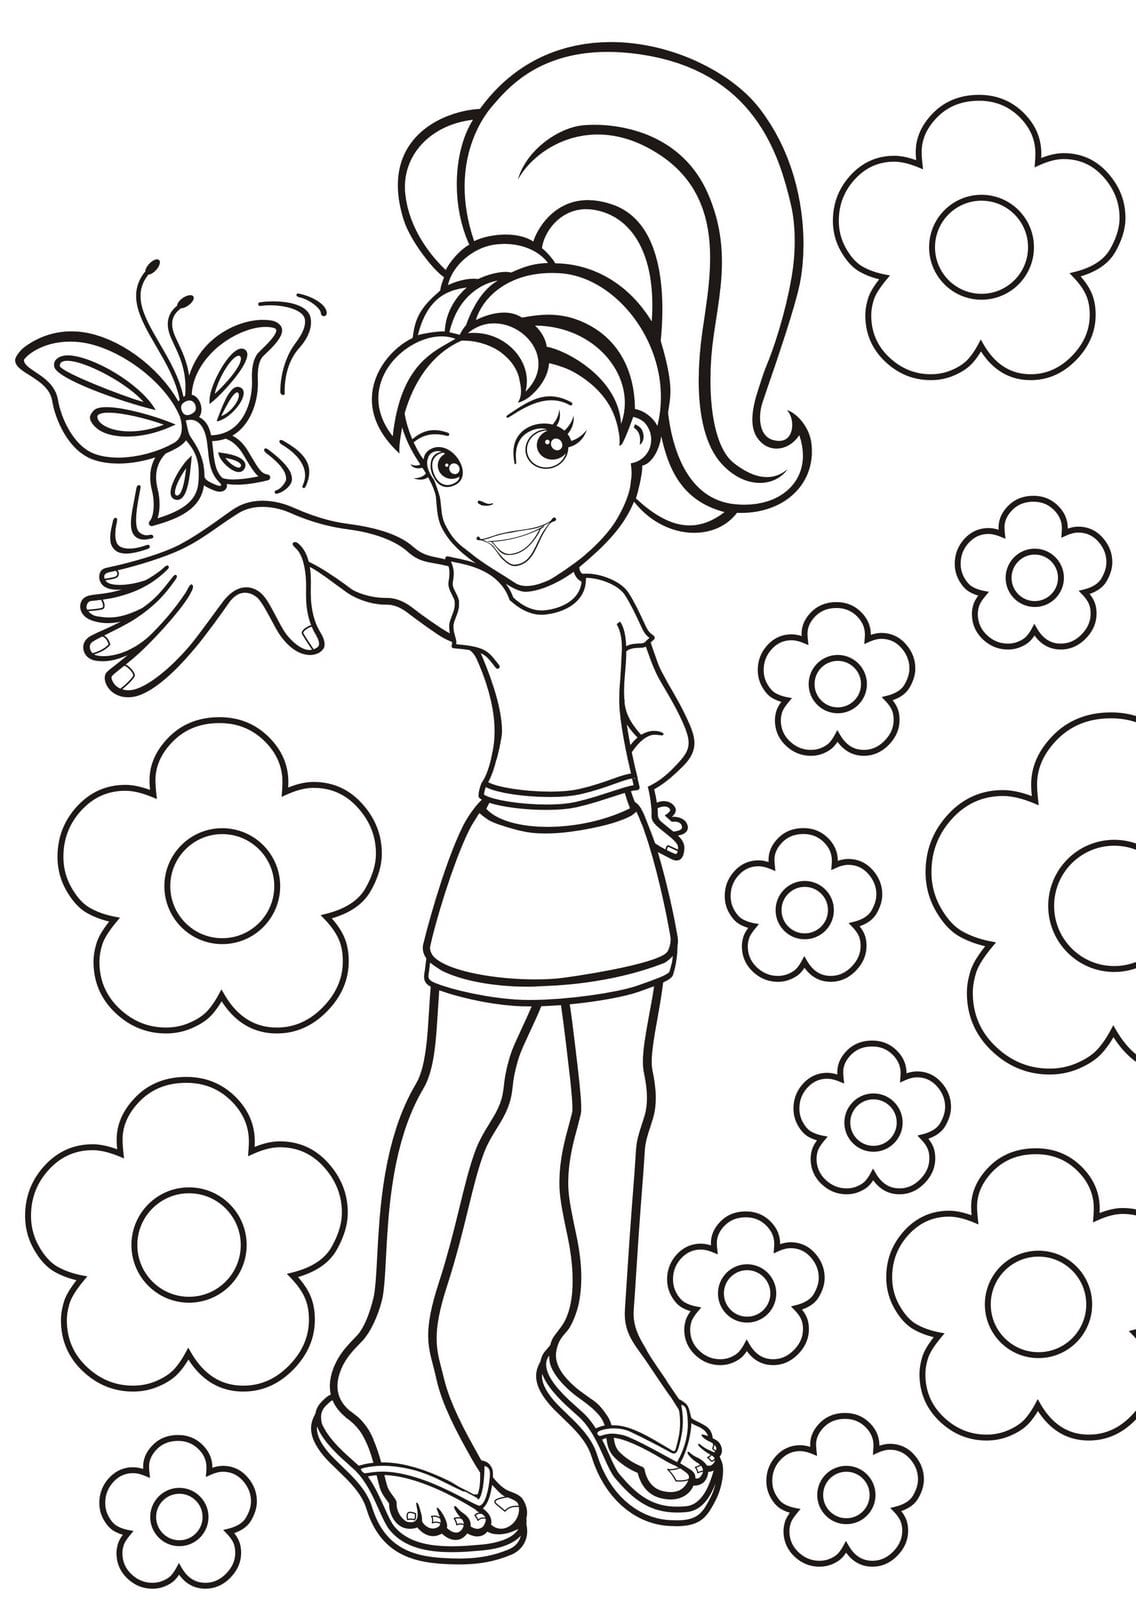 Desenhos Da Boneca Polly Pocket Para Colorir, Pintar, Imprimir